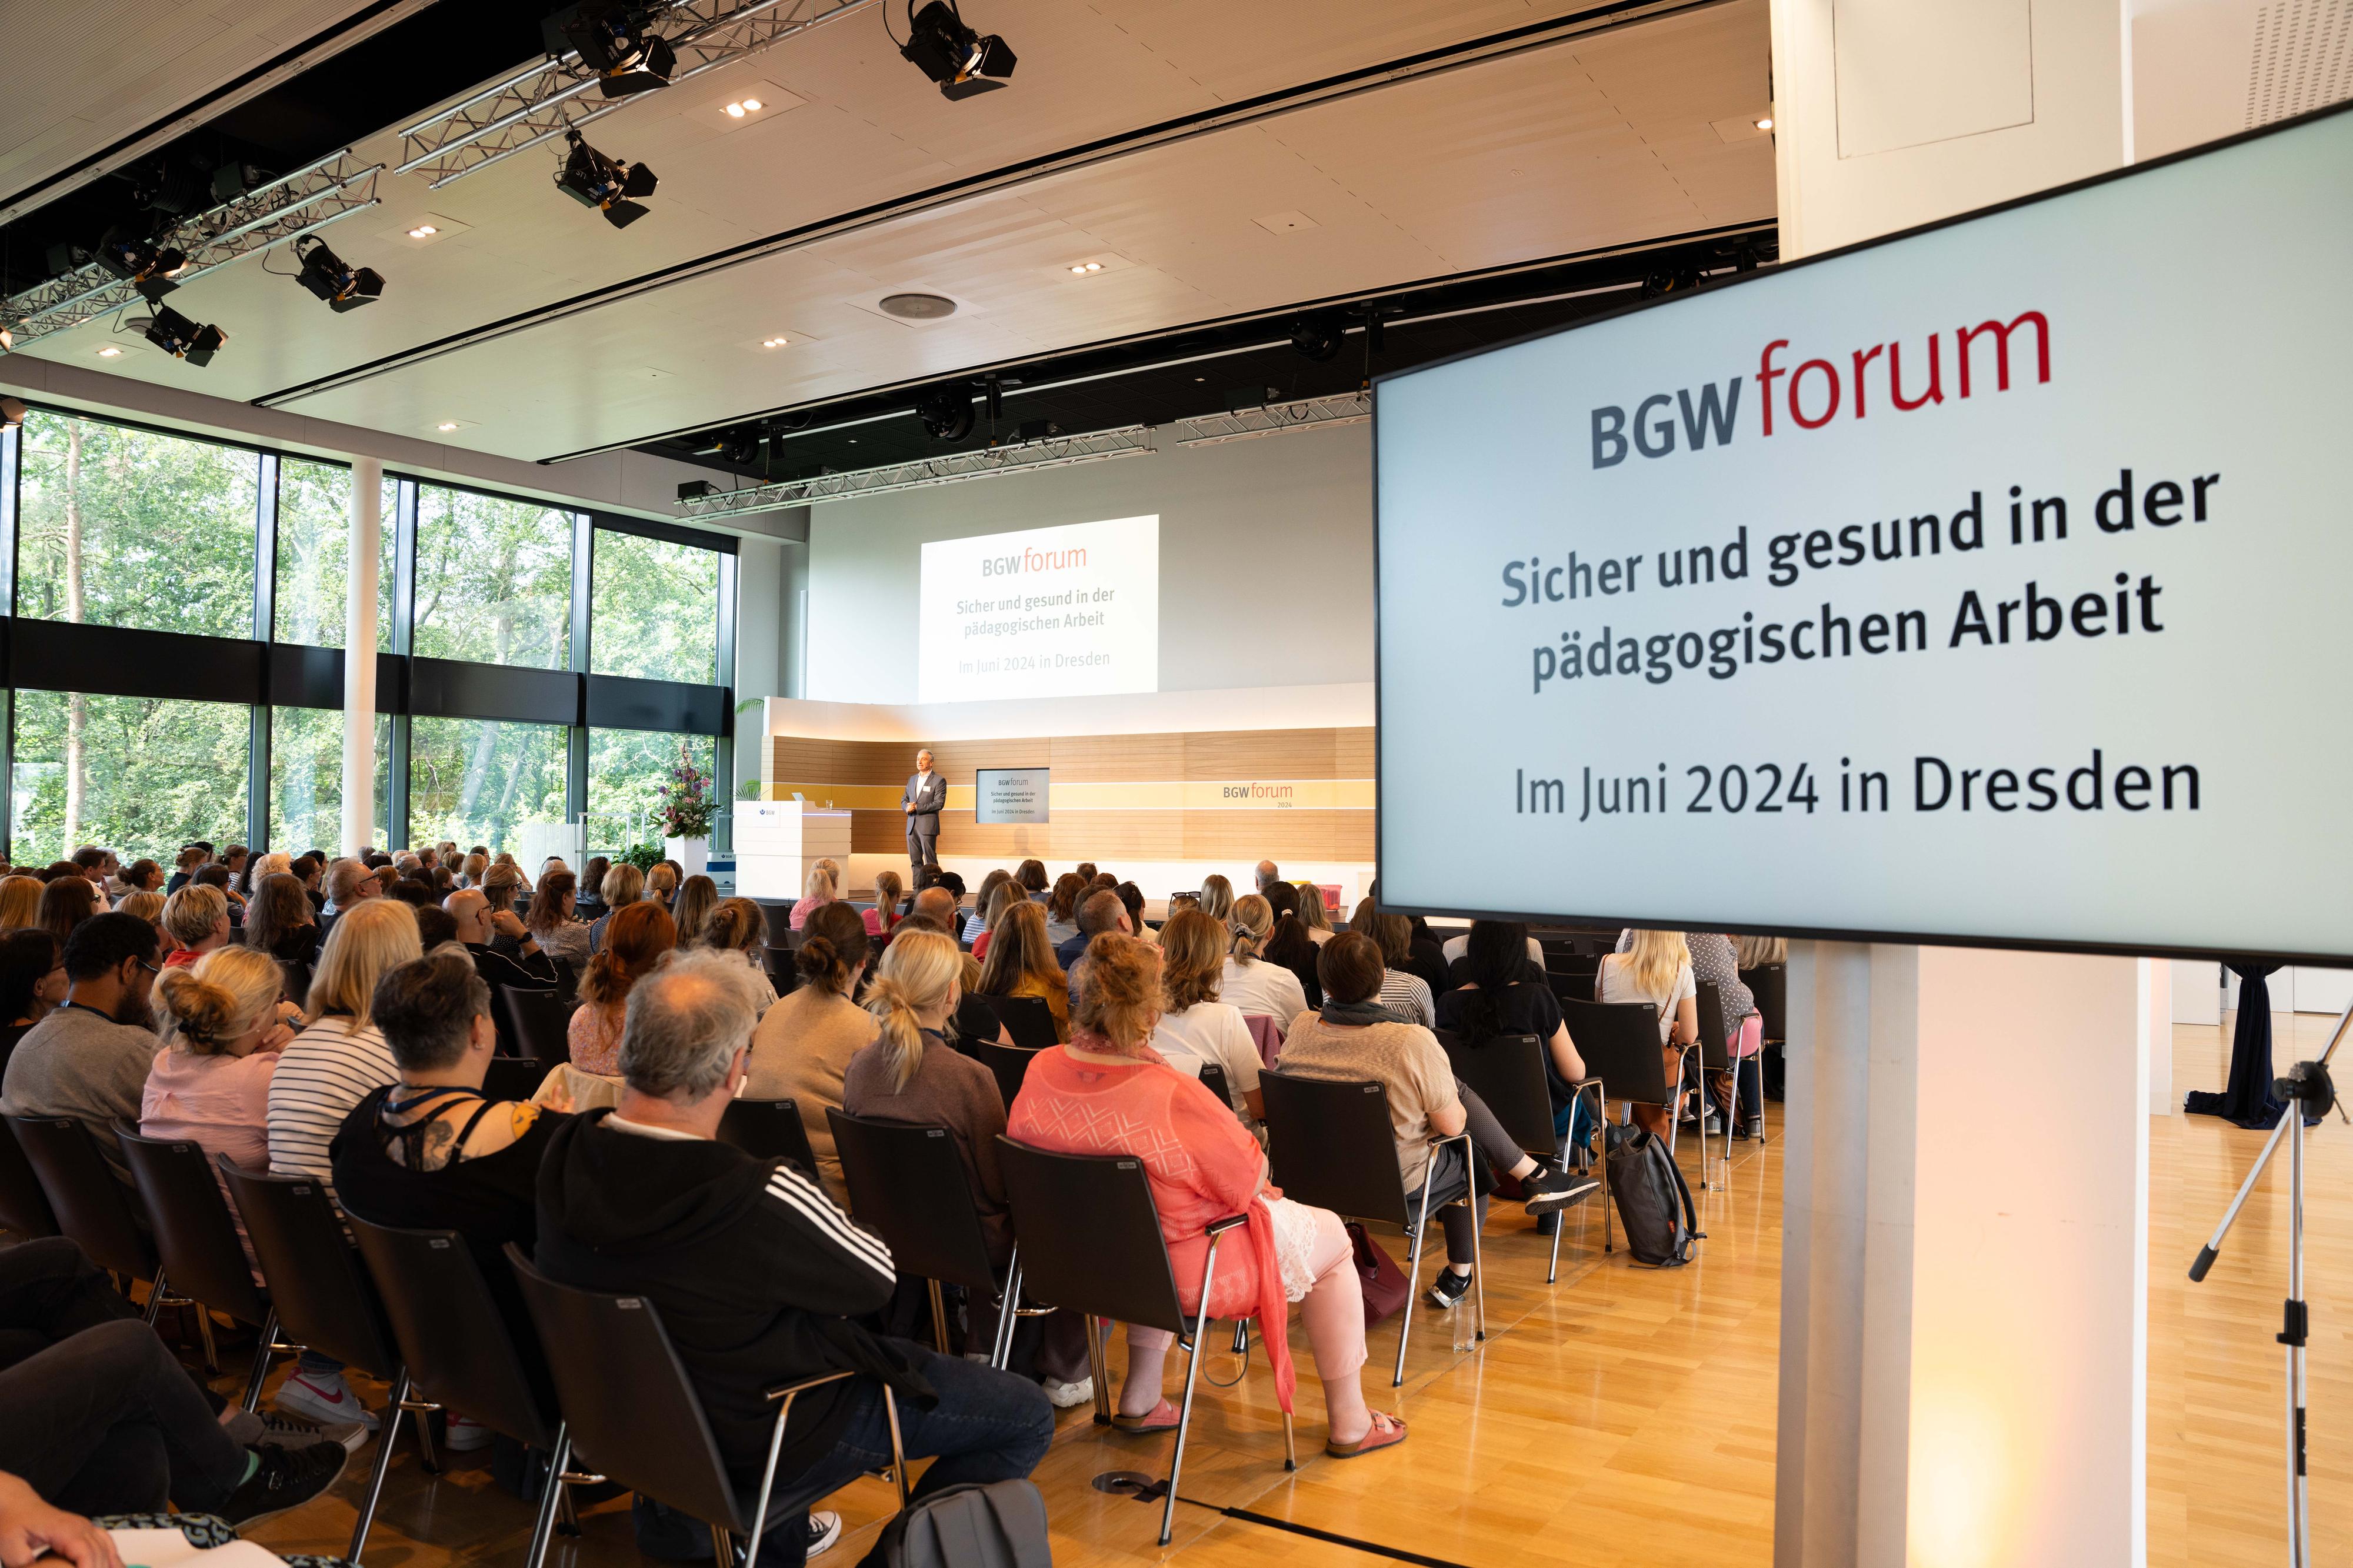 Saalansicht mit sitzendem Publikum. Auf Monitoren steht "BGW forum Sicher und gesund in der pädagogischen Arbeit Im Juni 2024 in Dresden".